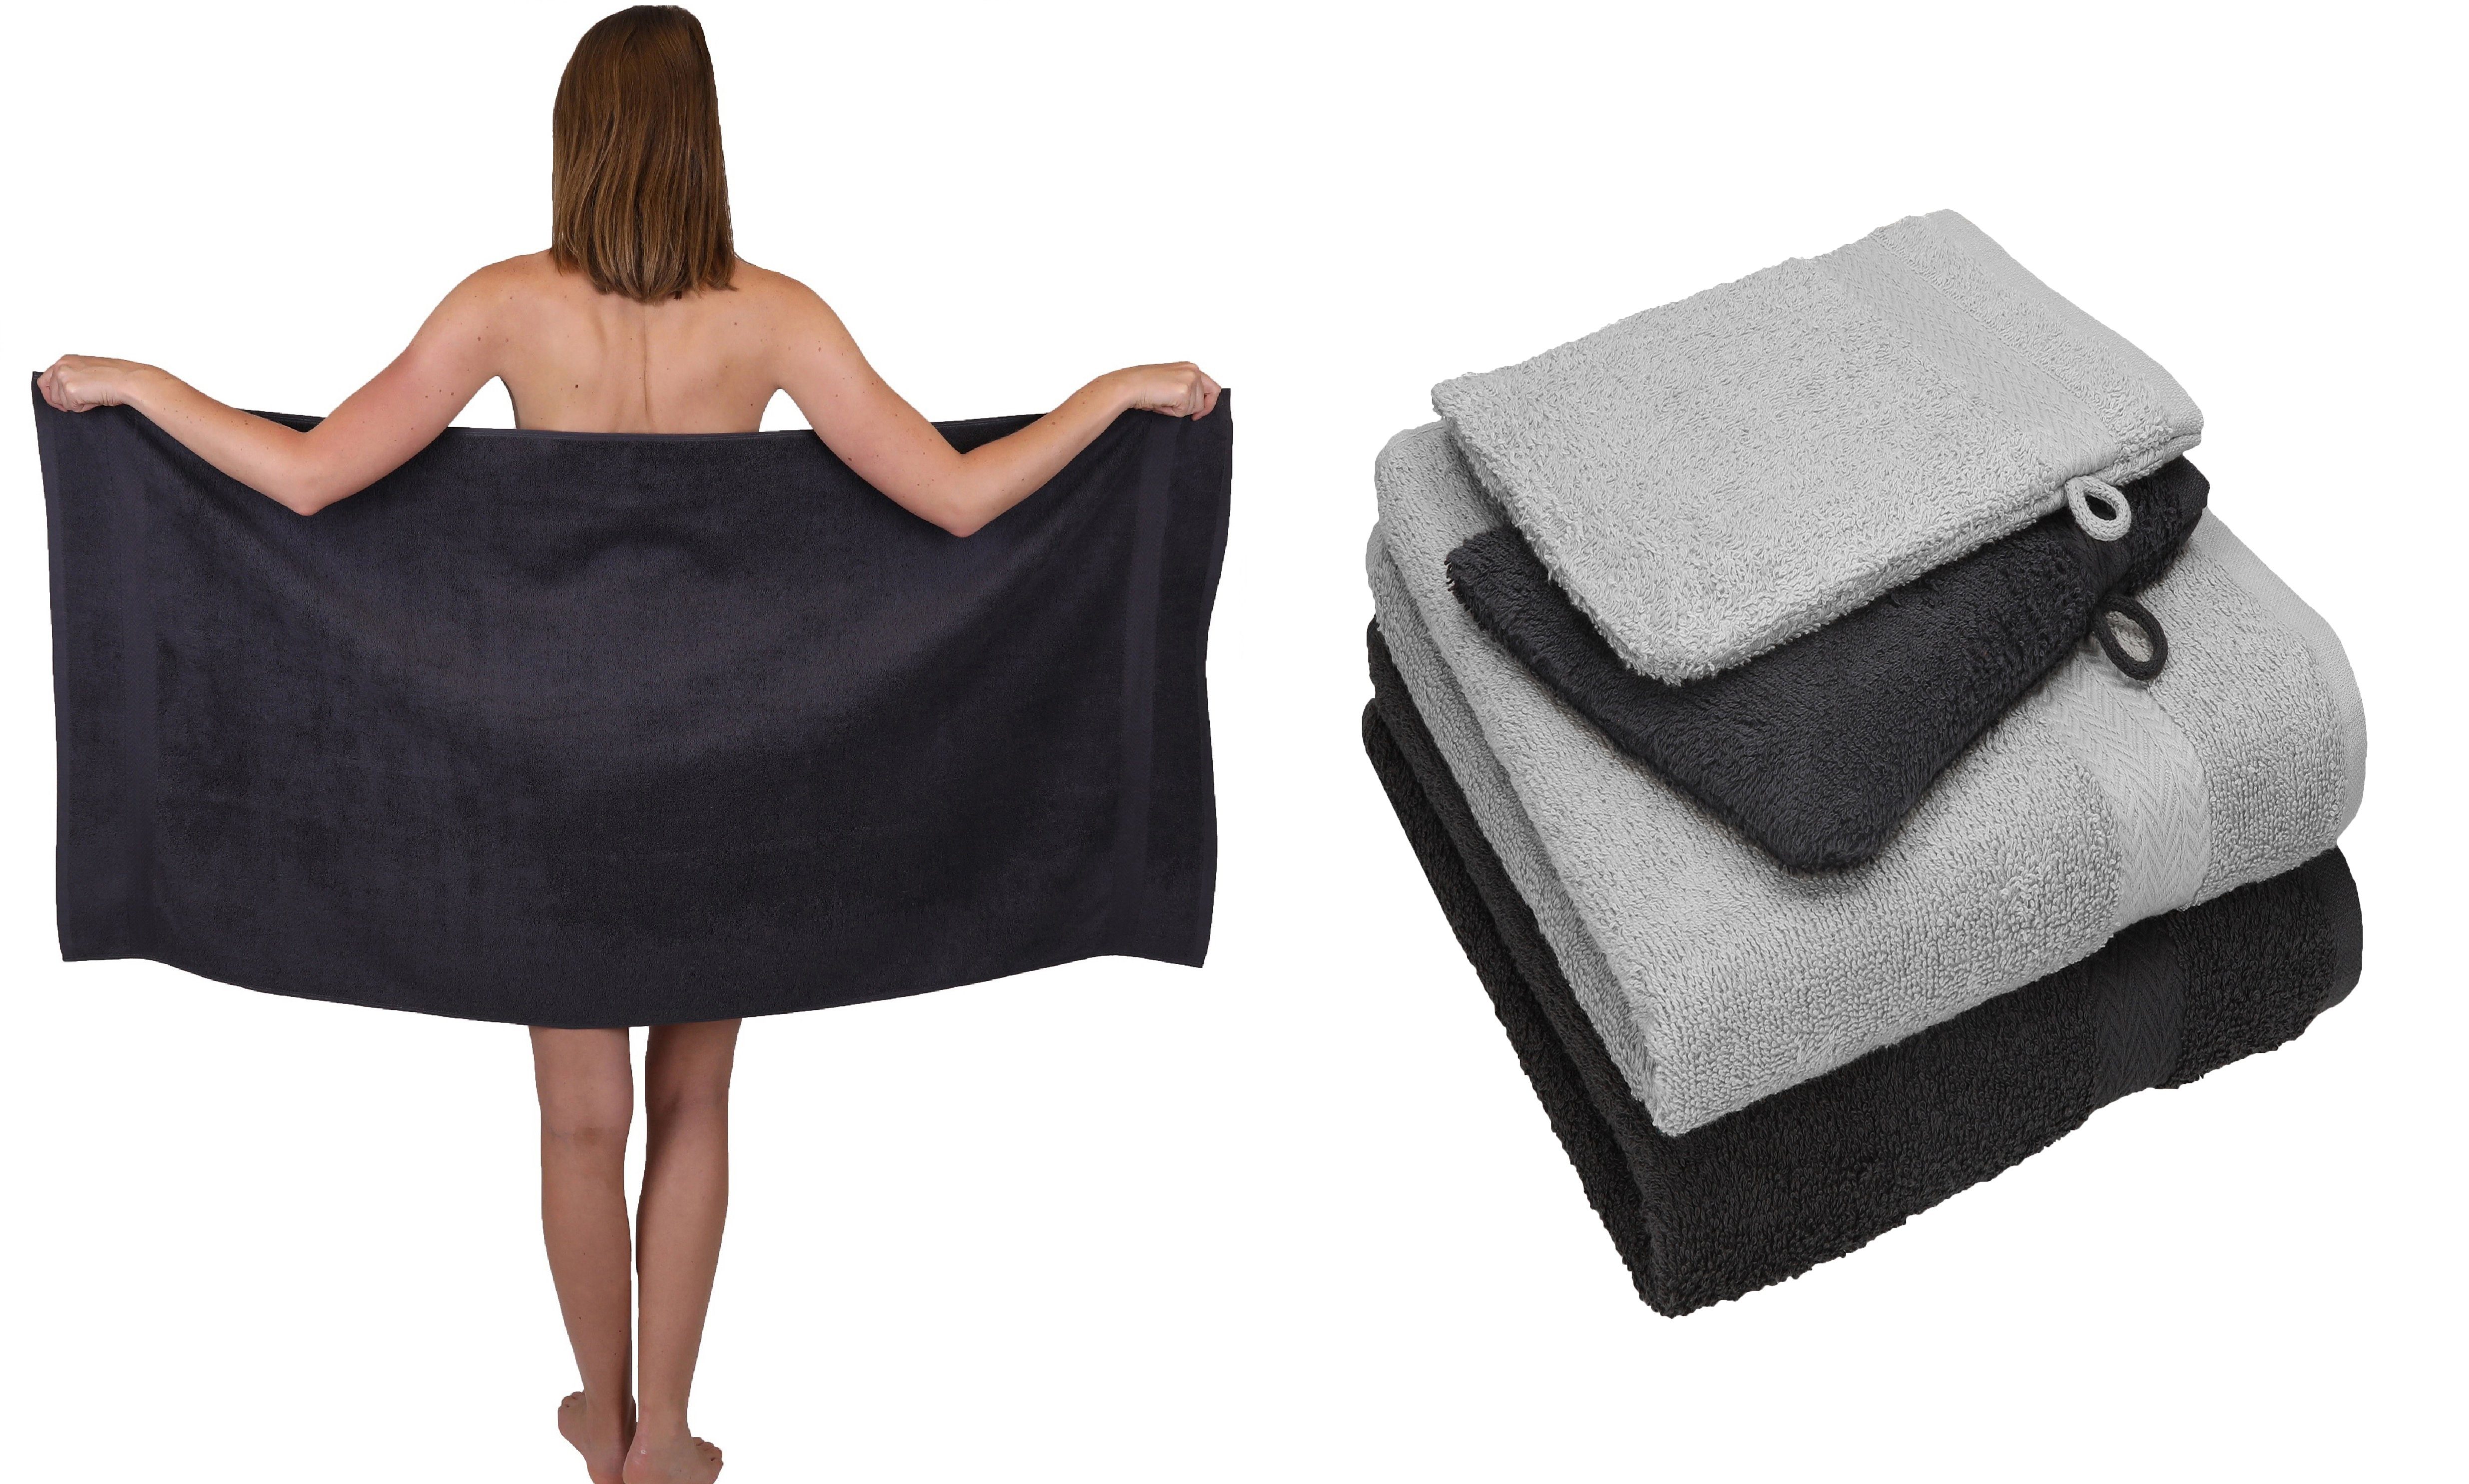 Betz Handtuch Set 5 TLG. Handtuch Set SINGLE PACK 100% Baumwolle 1 Duschtuch 2 Handtücher 2 Waschhandschuhe, 100% Baumwolle graphit grau und silber grau